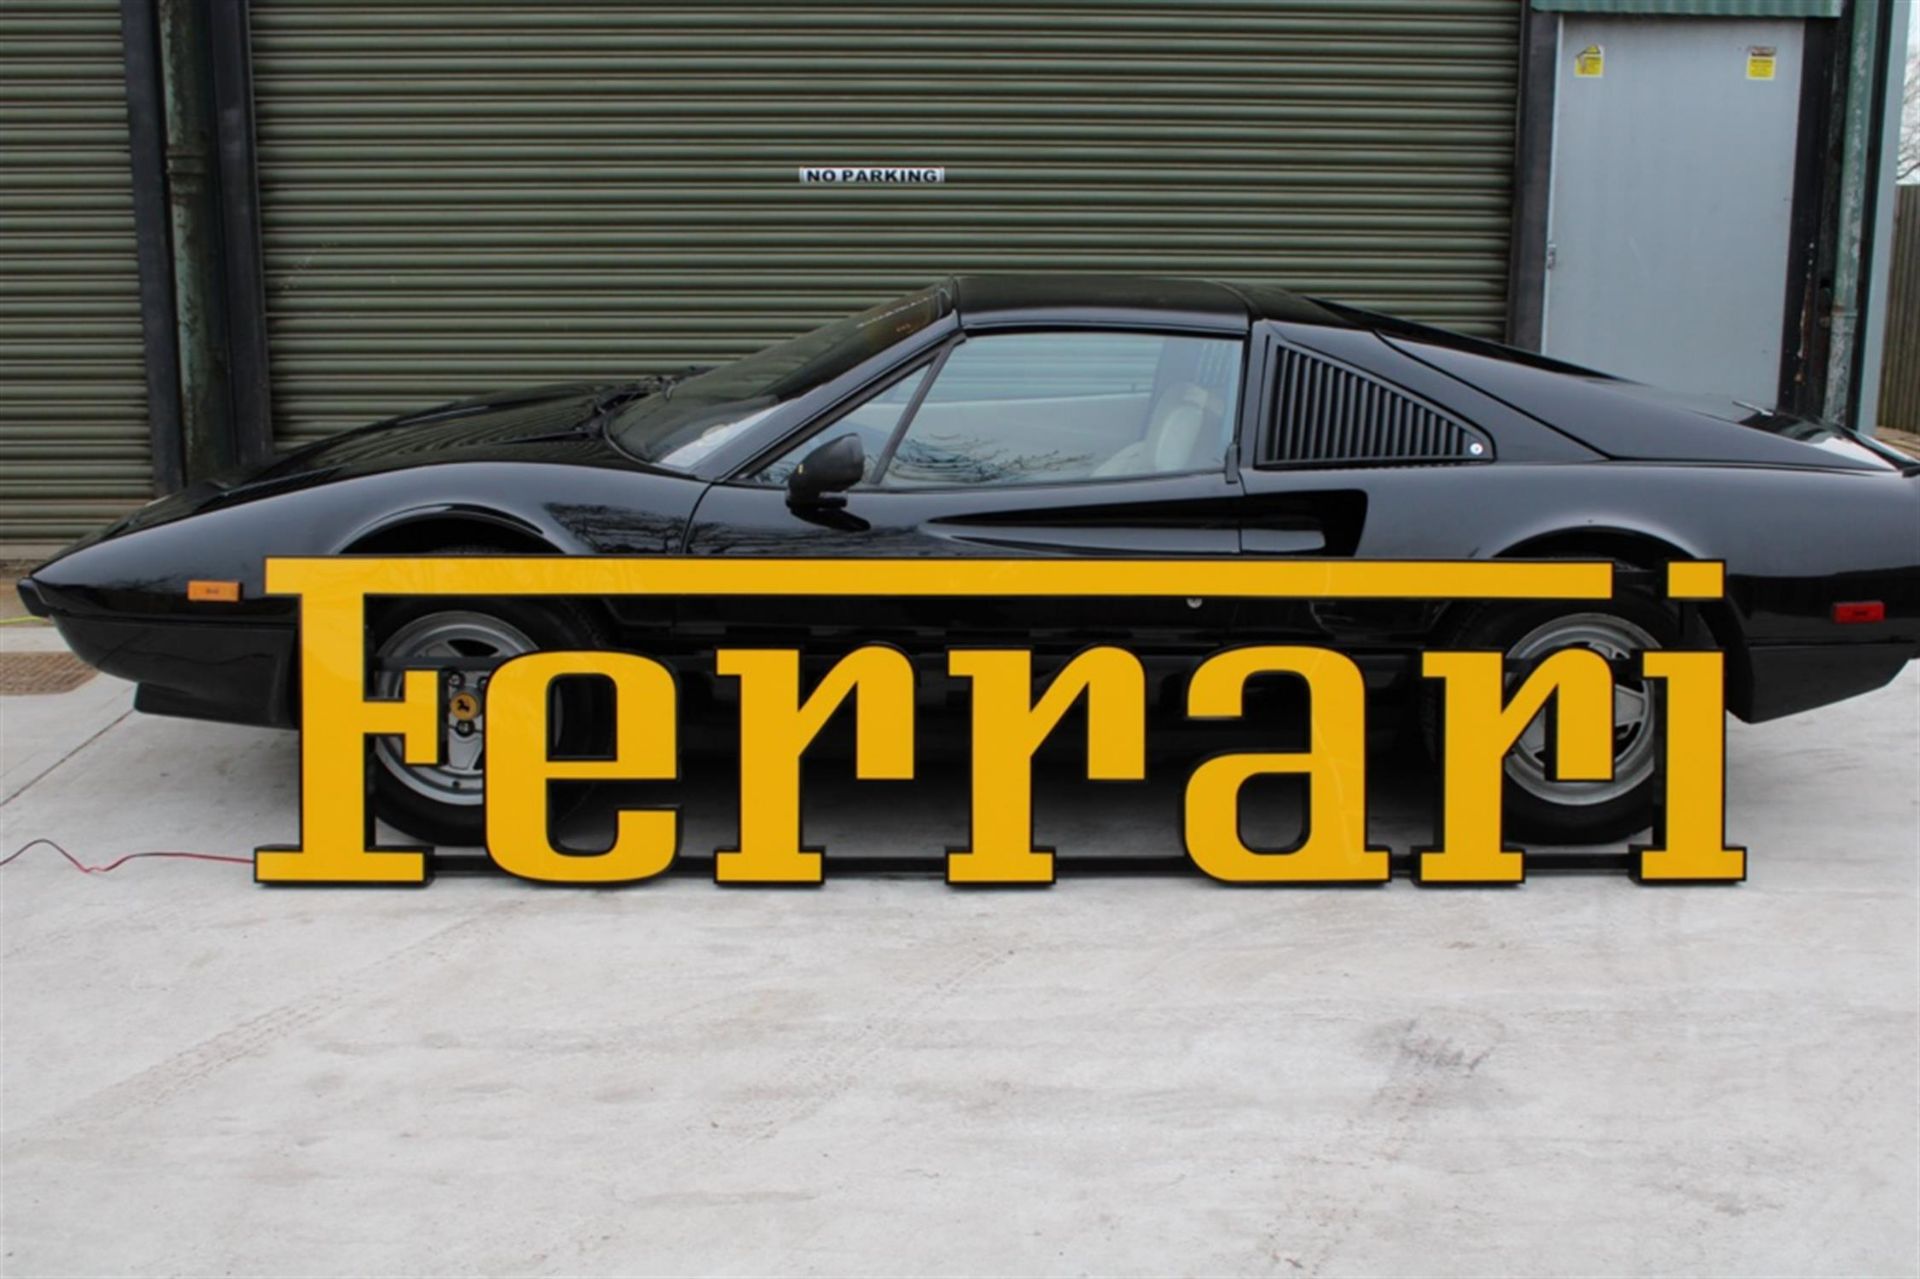 Ferrari Style Large 3 Metre Illuminated Dealership Sign - Image 6 of 8